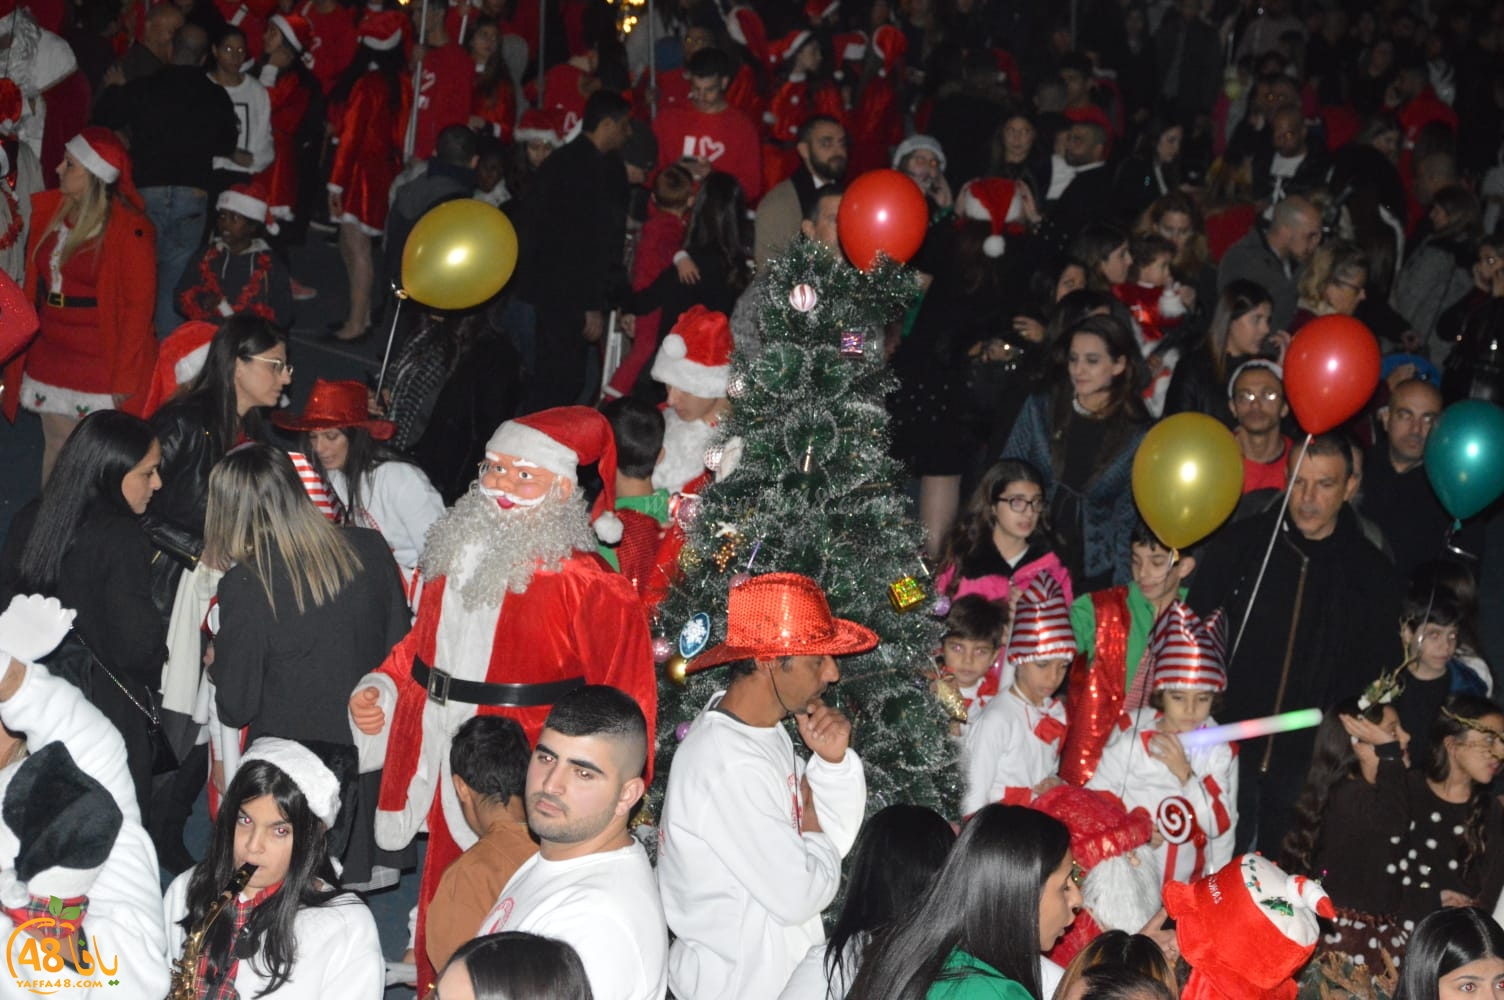 بالفيديو: استعراض كشفي في مدينة يافا بمناسبة عيد الميلاد المجيد